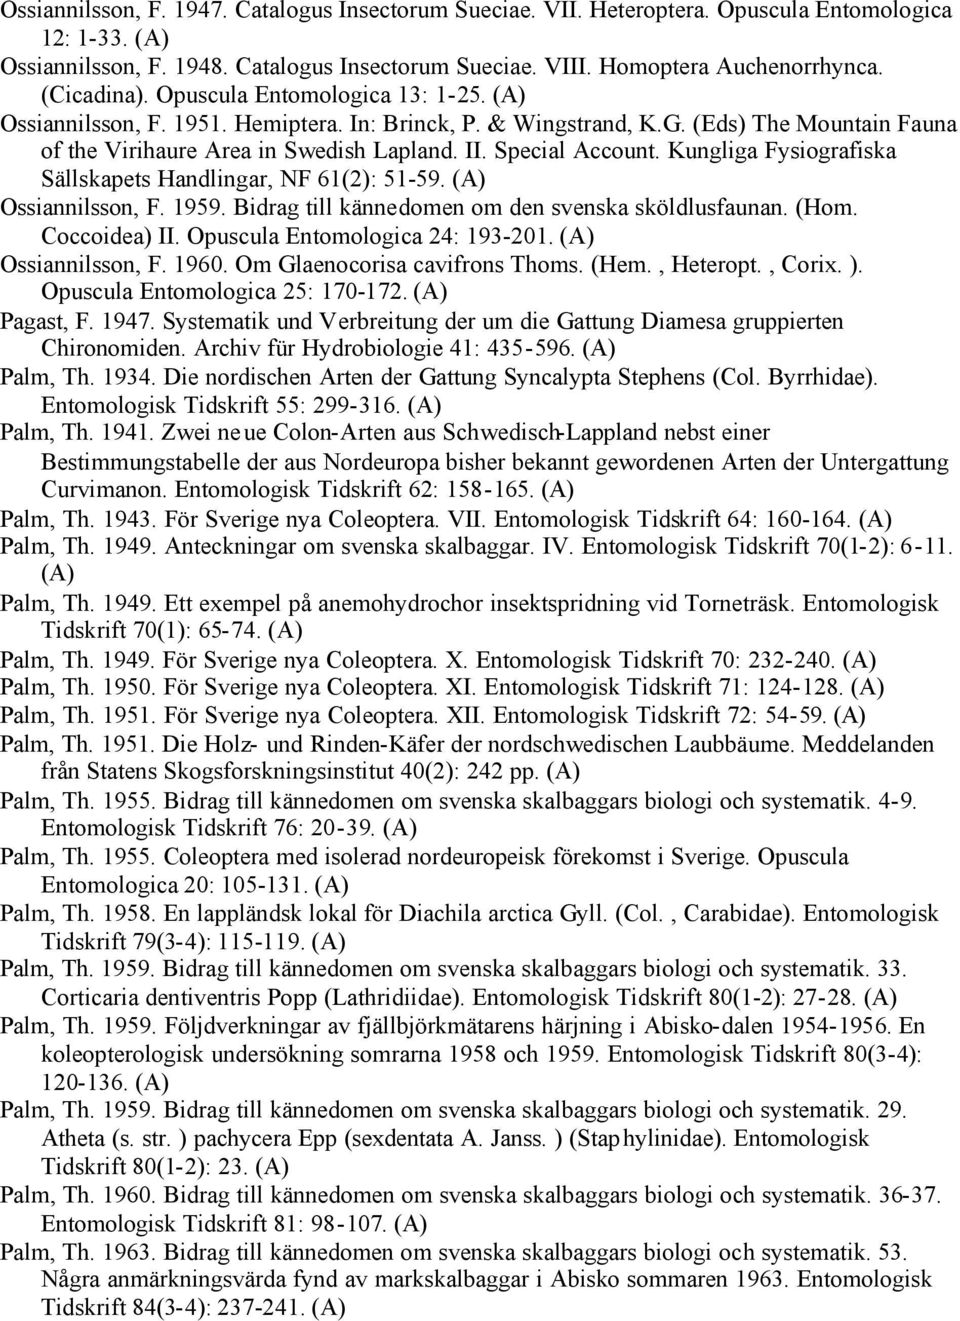 Kungliga Fysiografiska Sällskapets Handlingar, NF 61(2): 51-59. Ossiannilsson, F. 1959. Bidrag till kännedomen om den svenska sköldlusfaunan. (Hom. Coccoidea) II. Opuscula Entomologica 24: 193-201.